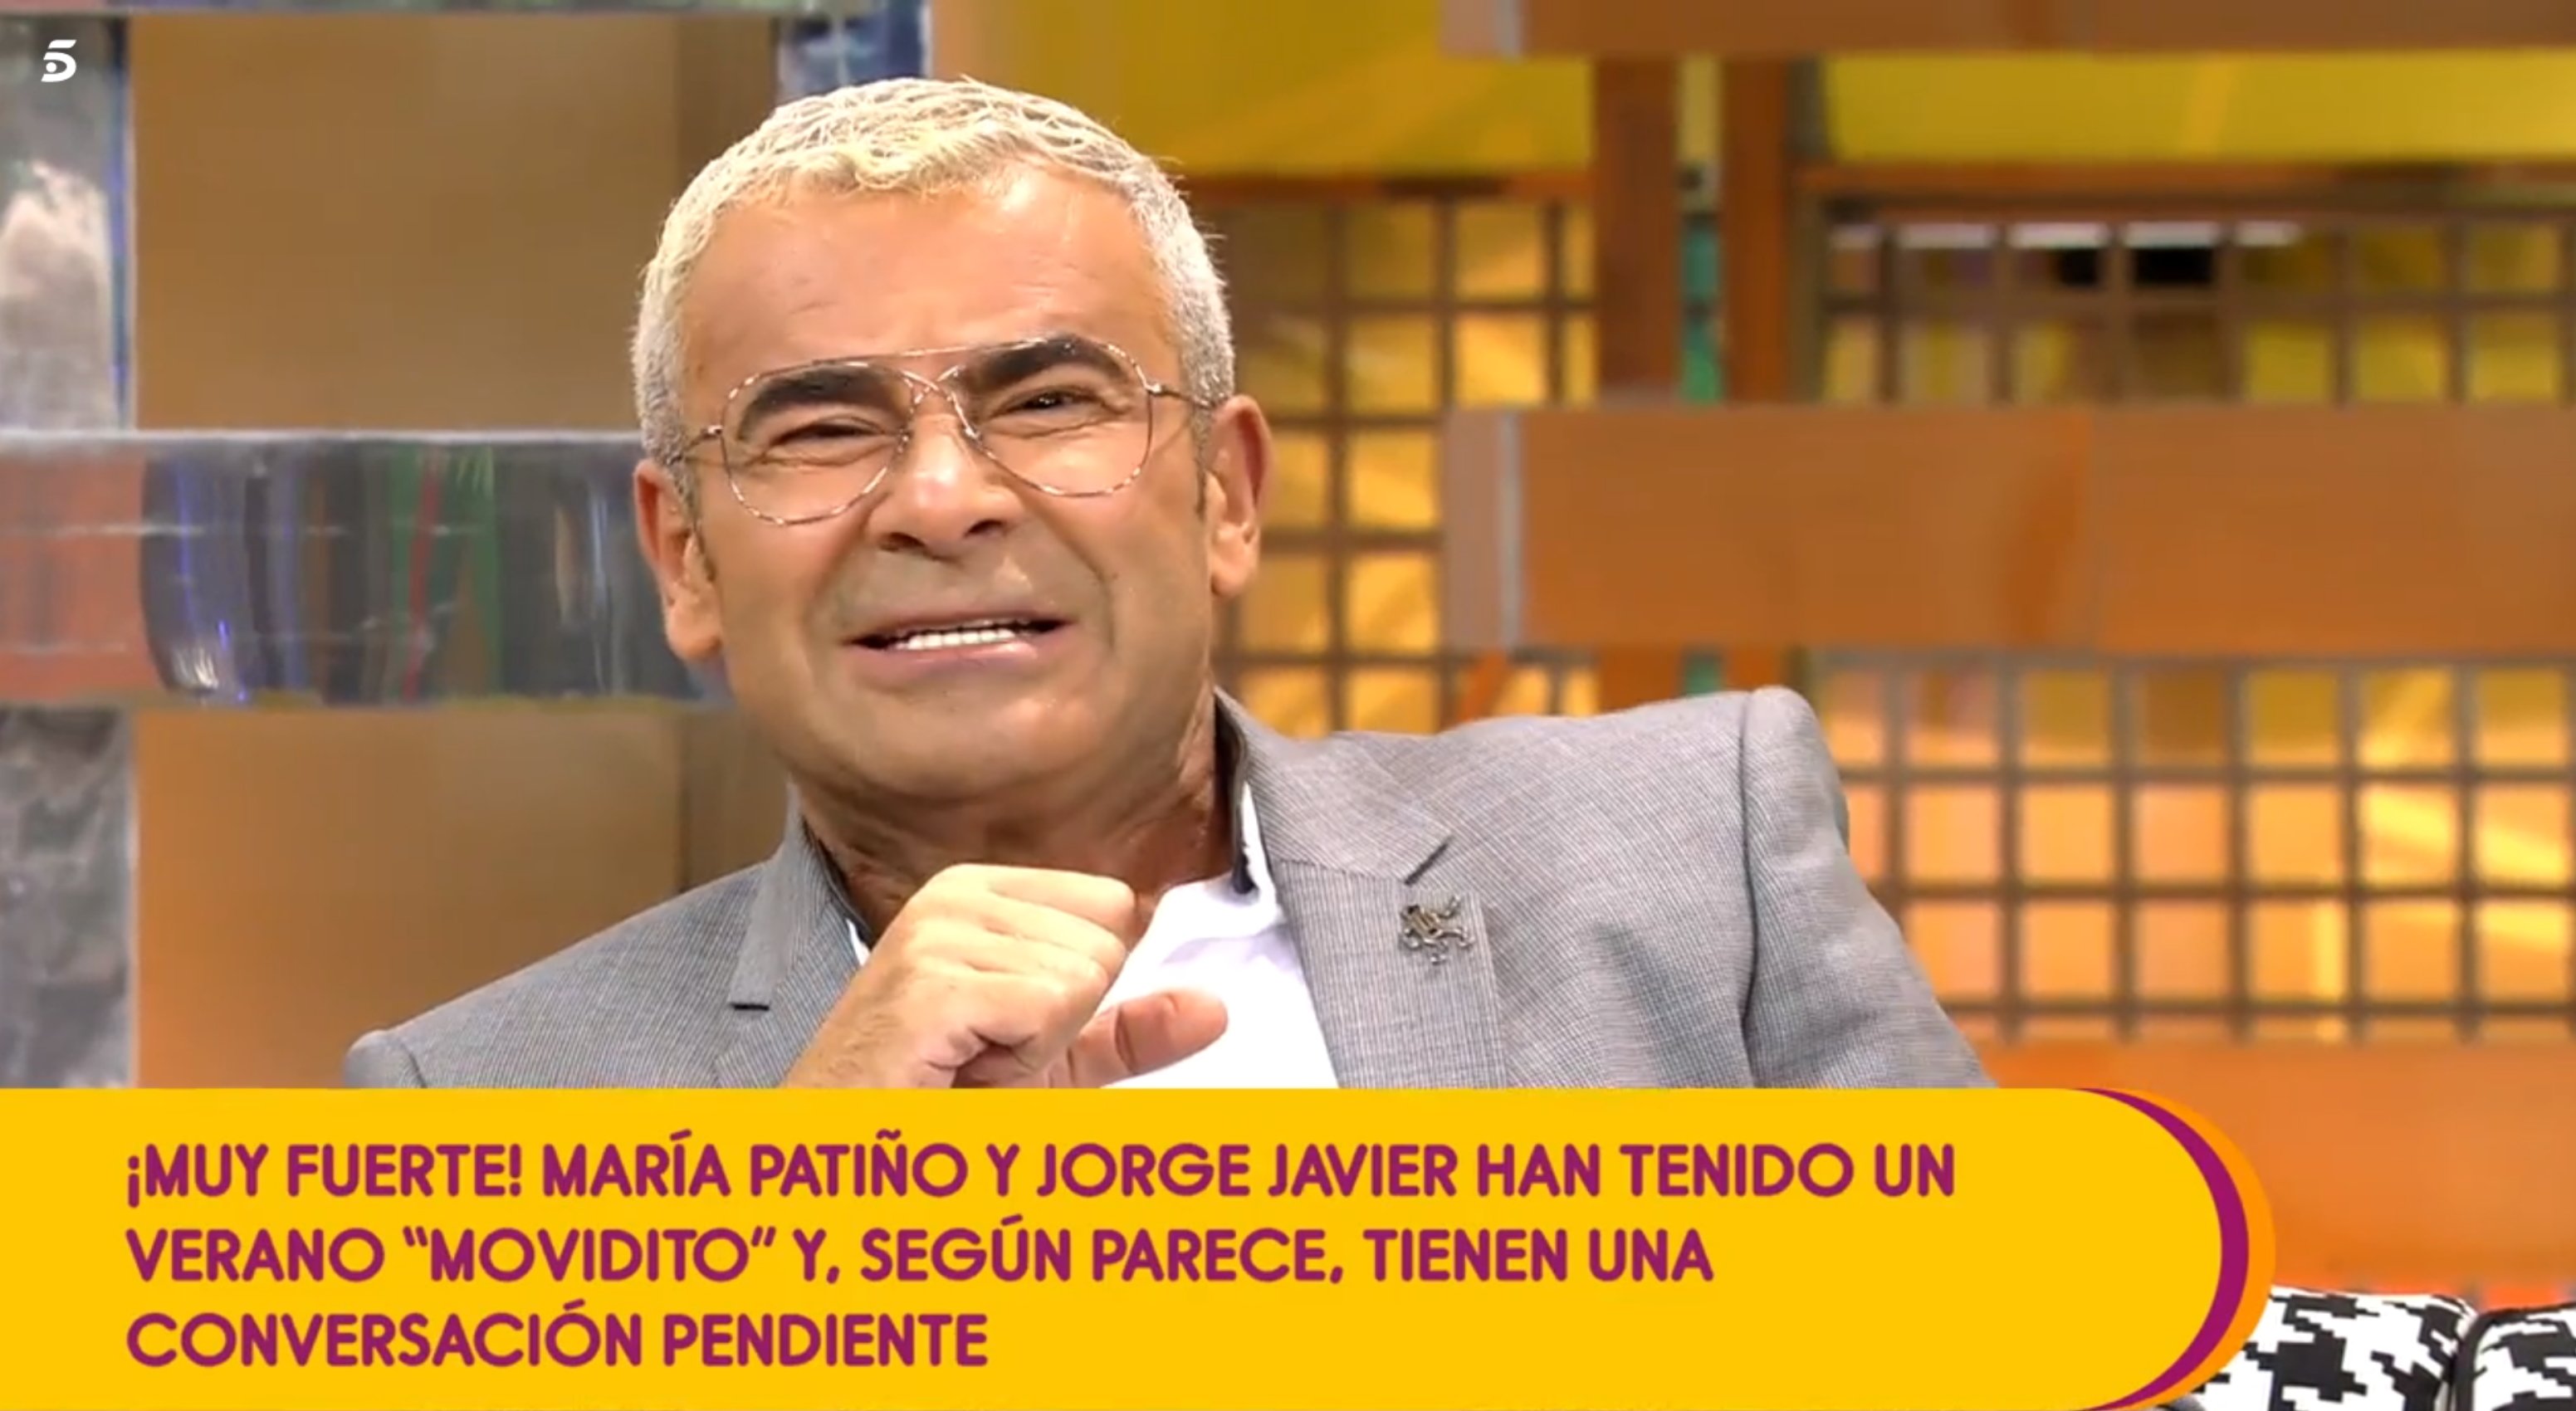 El mal rotllo entre Jorge Javier Vázquez i María Patiño: "Pregúntate por qué"